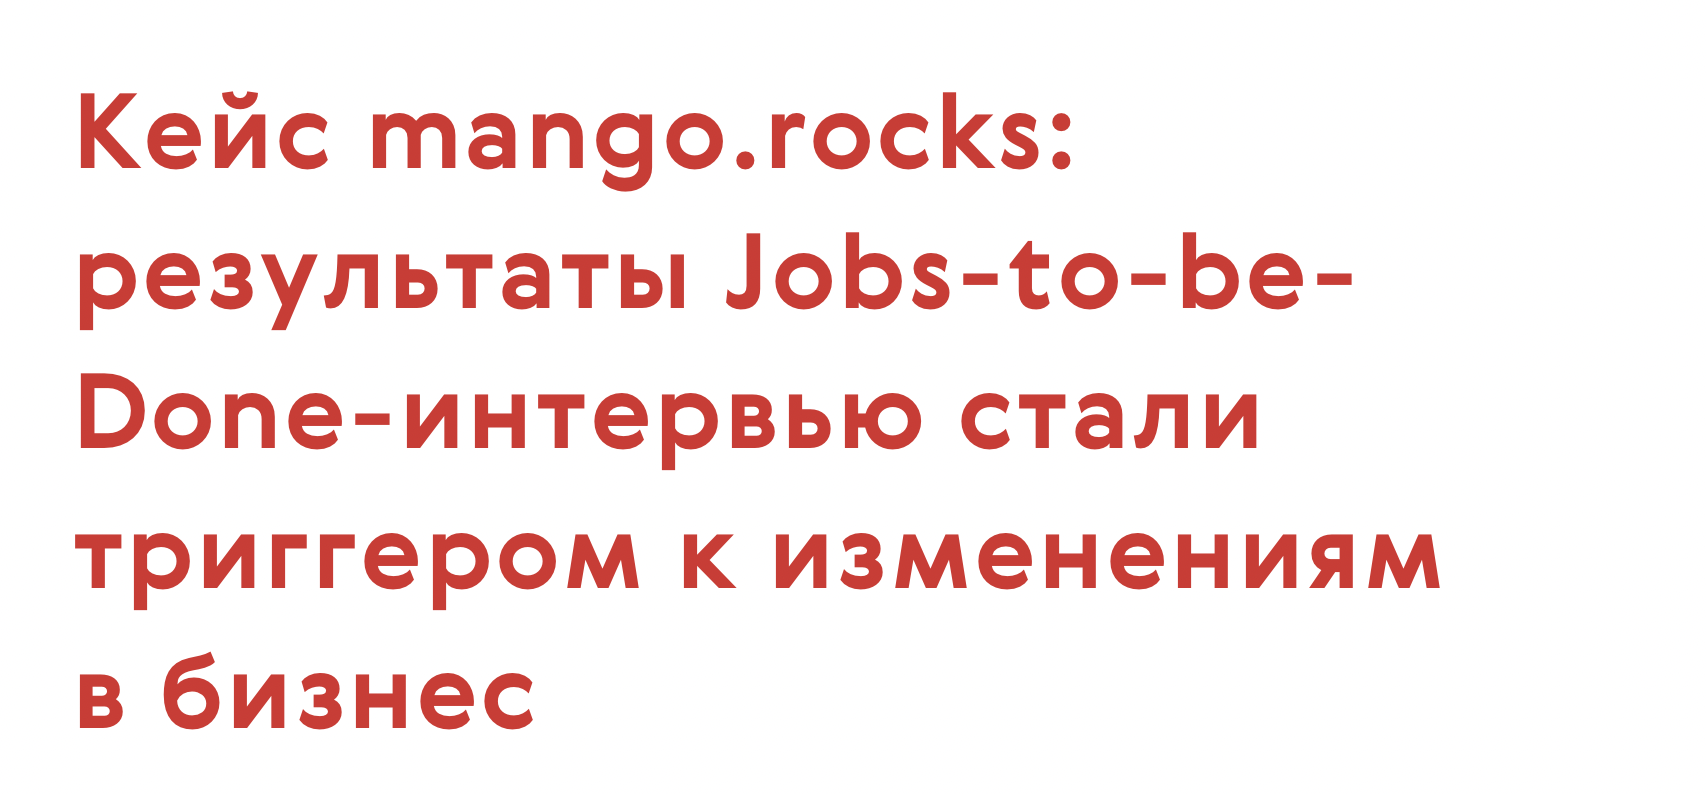 Кейс mango.rocks: результаты Jobs-to-be-Done-интервью стали триггером к изменениям в бизнесе